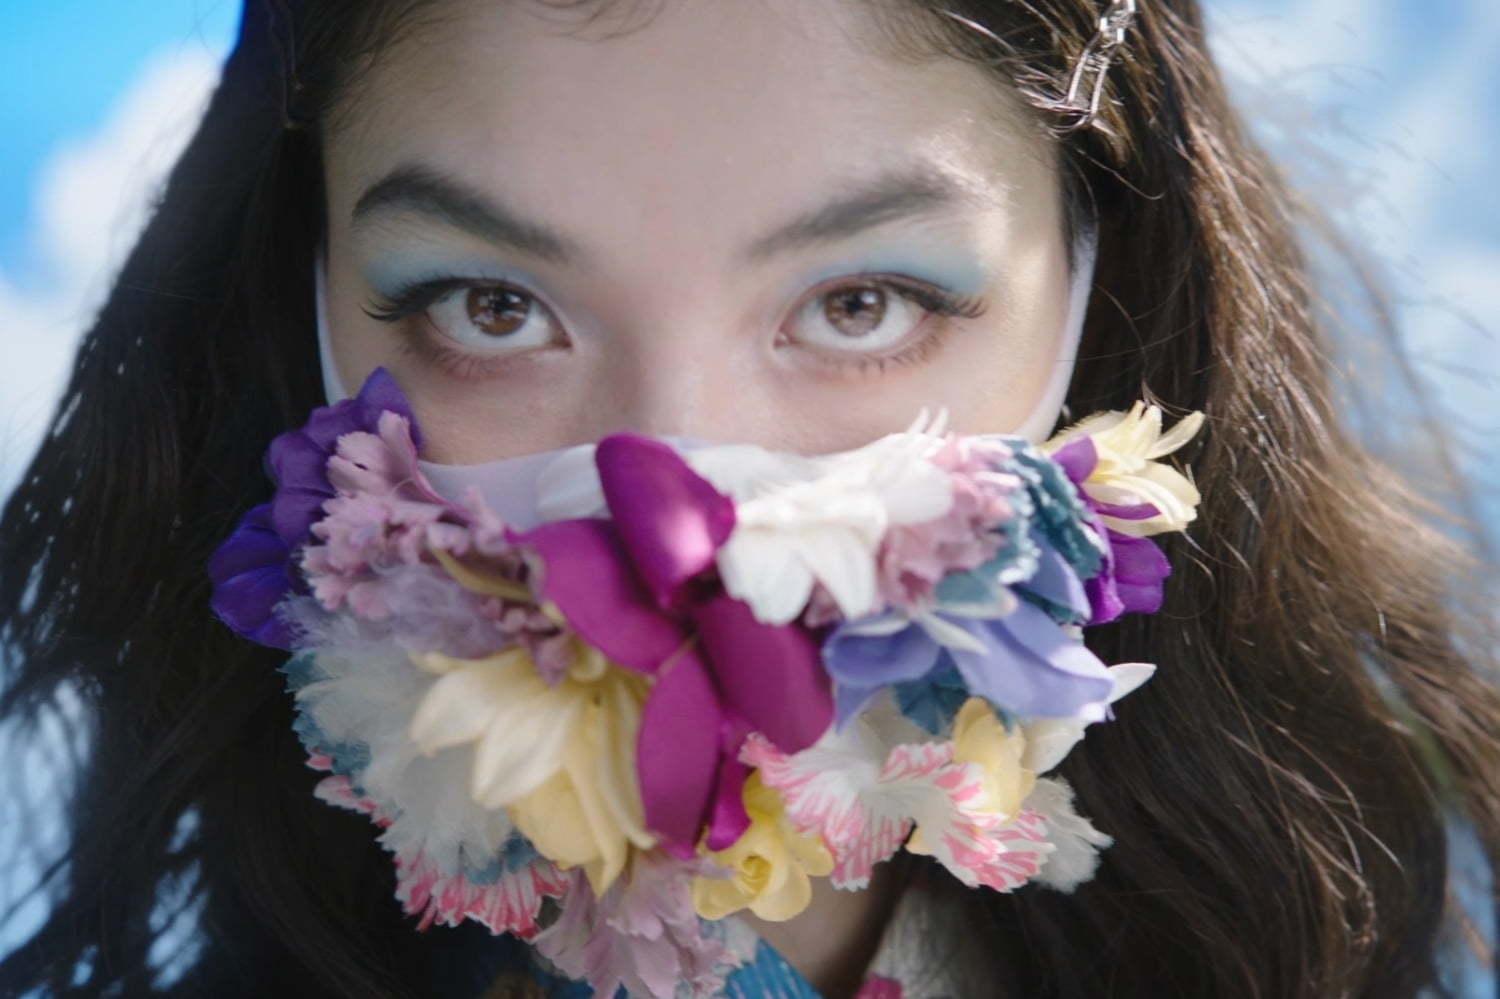 ケイタ マルヤマ×ピッタマスクのコラボショー、“時空を超えたファッション”を提案&モデルに福士リナ 